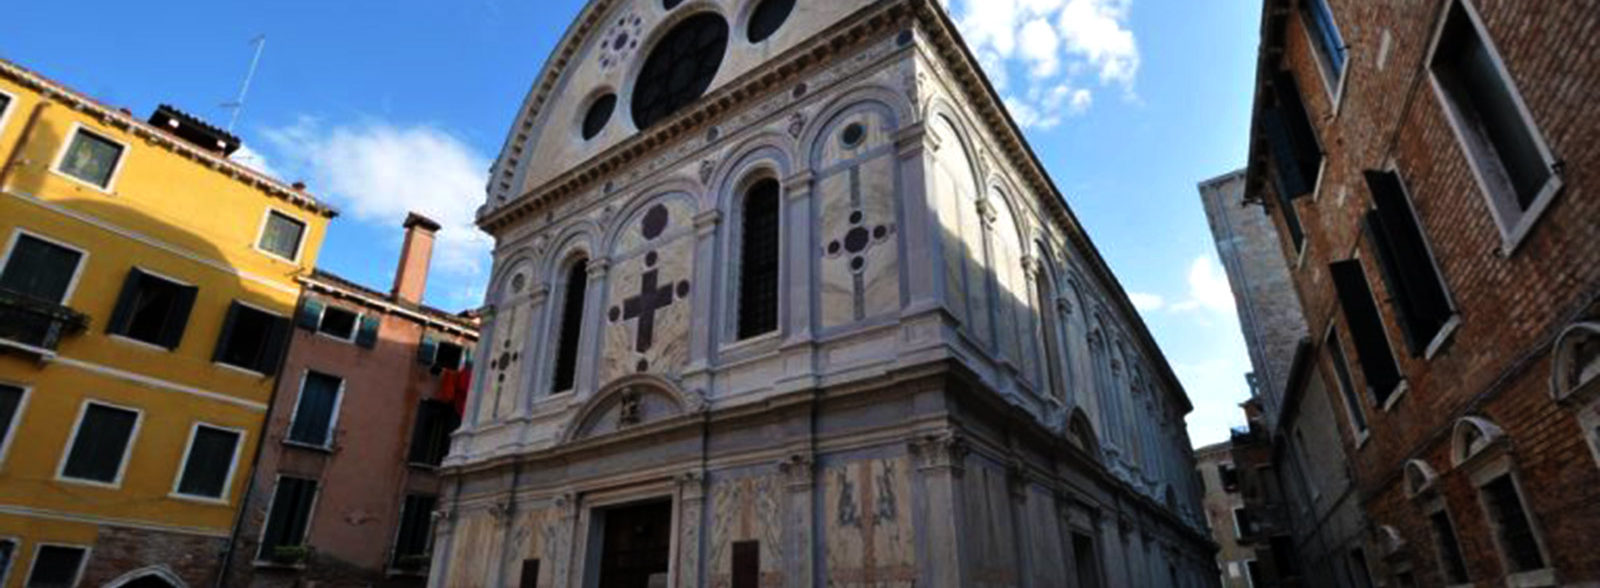 Le più belle chiese de vedere a Venezia